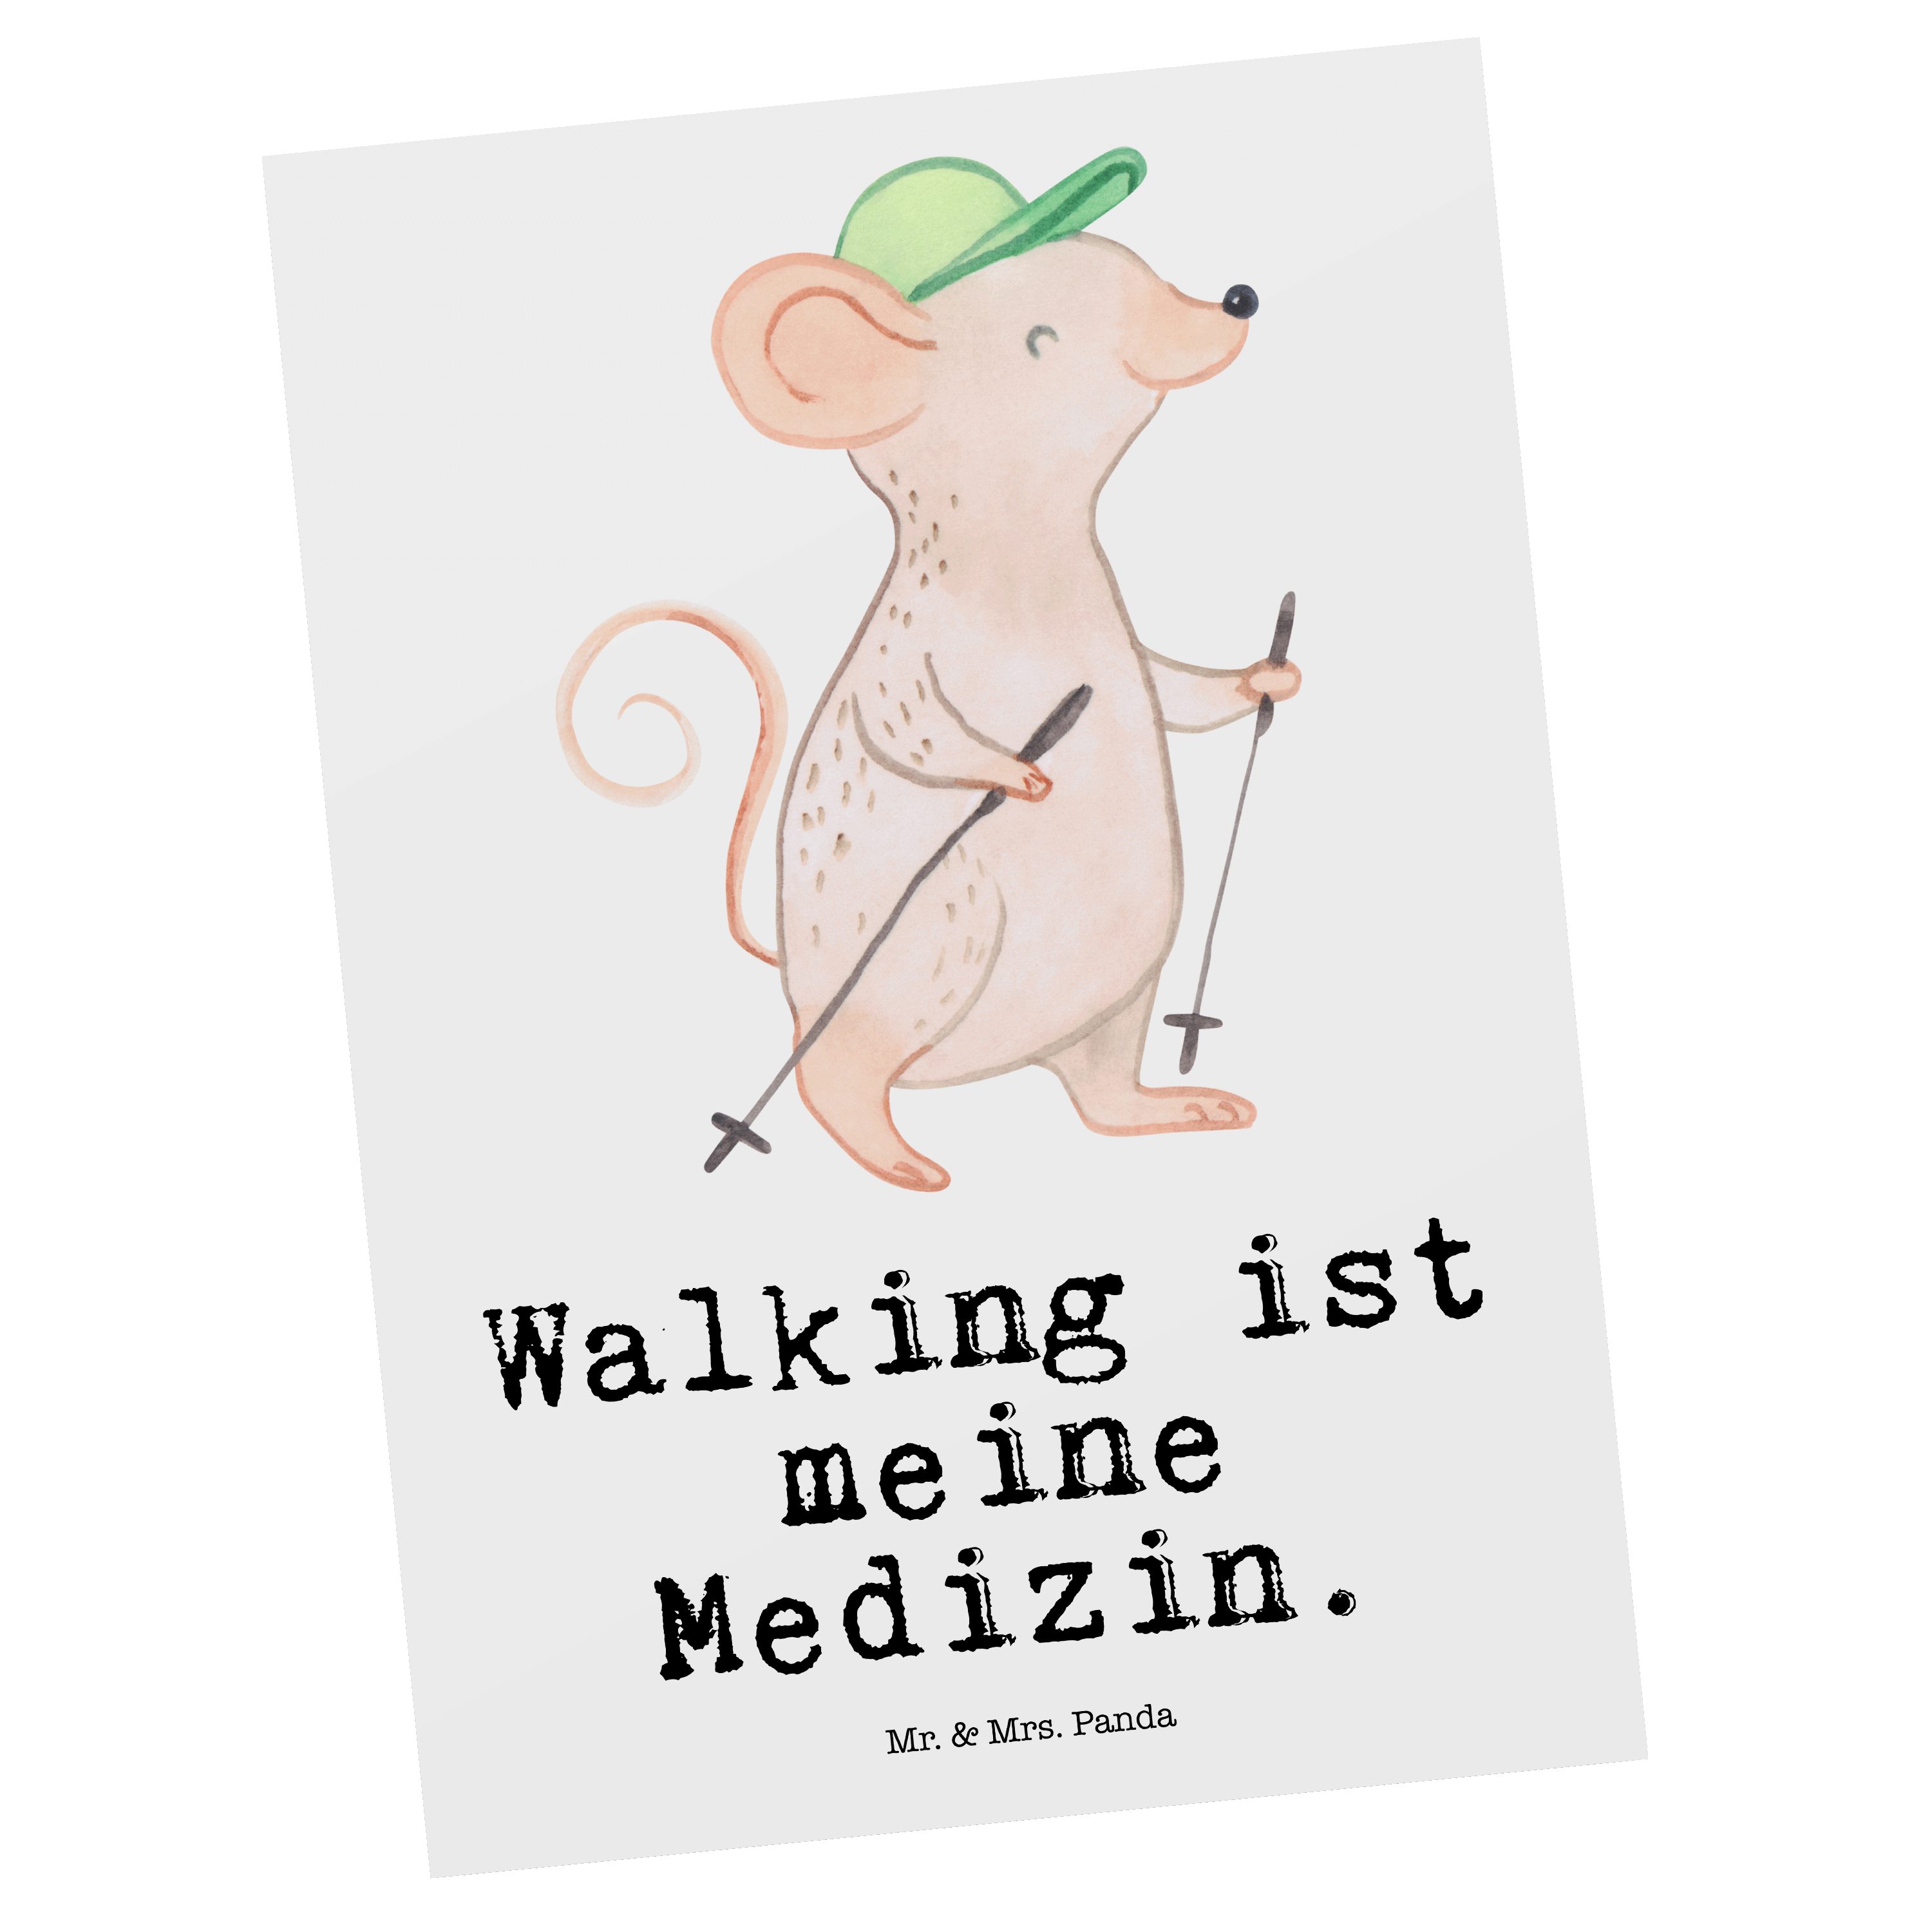 Mr. & Mrs. Panda Postkarte Maus Walking Medizin - Weiß - Geschenk, Einladung, Auszeichnung, Dank